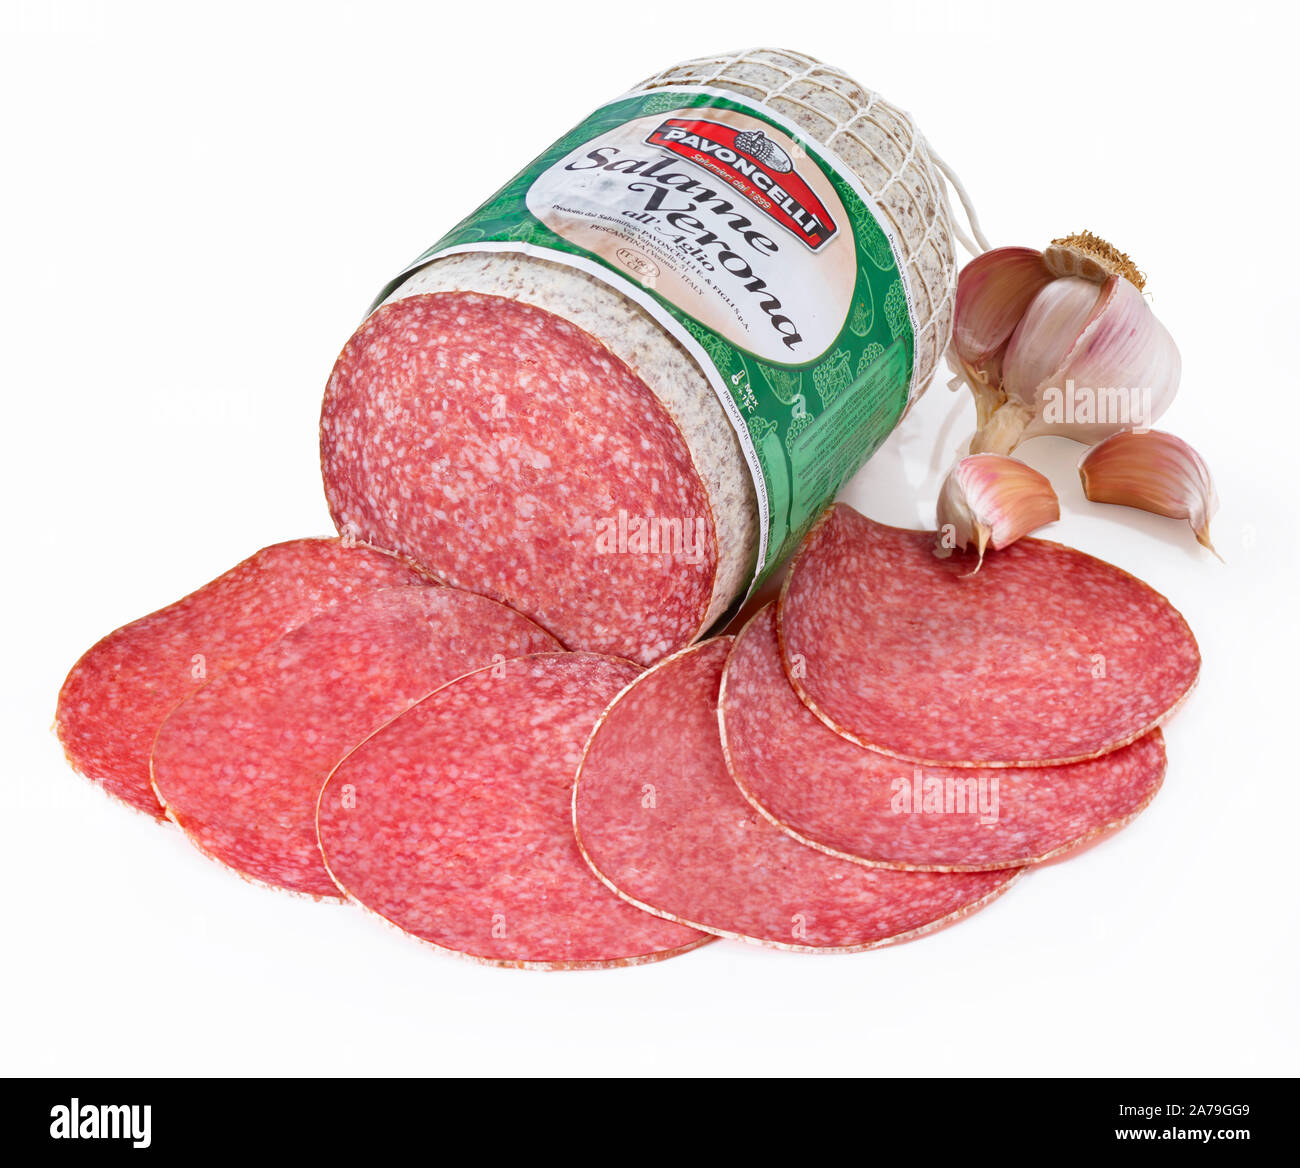 L'alimentation, de la saucisse, salami avec décoration sur le métro blanche Banque D'Images